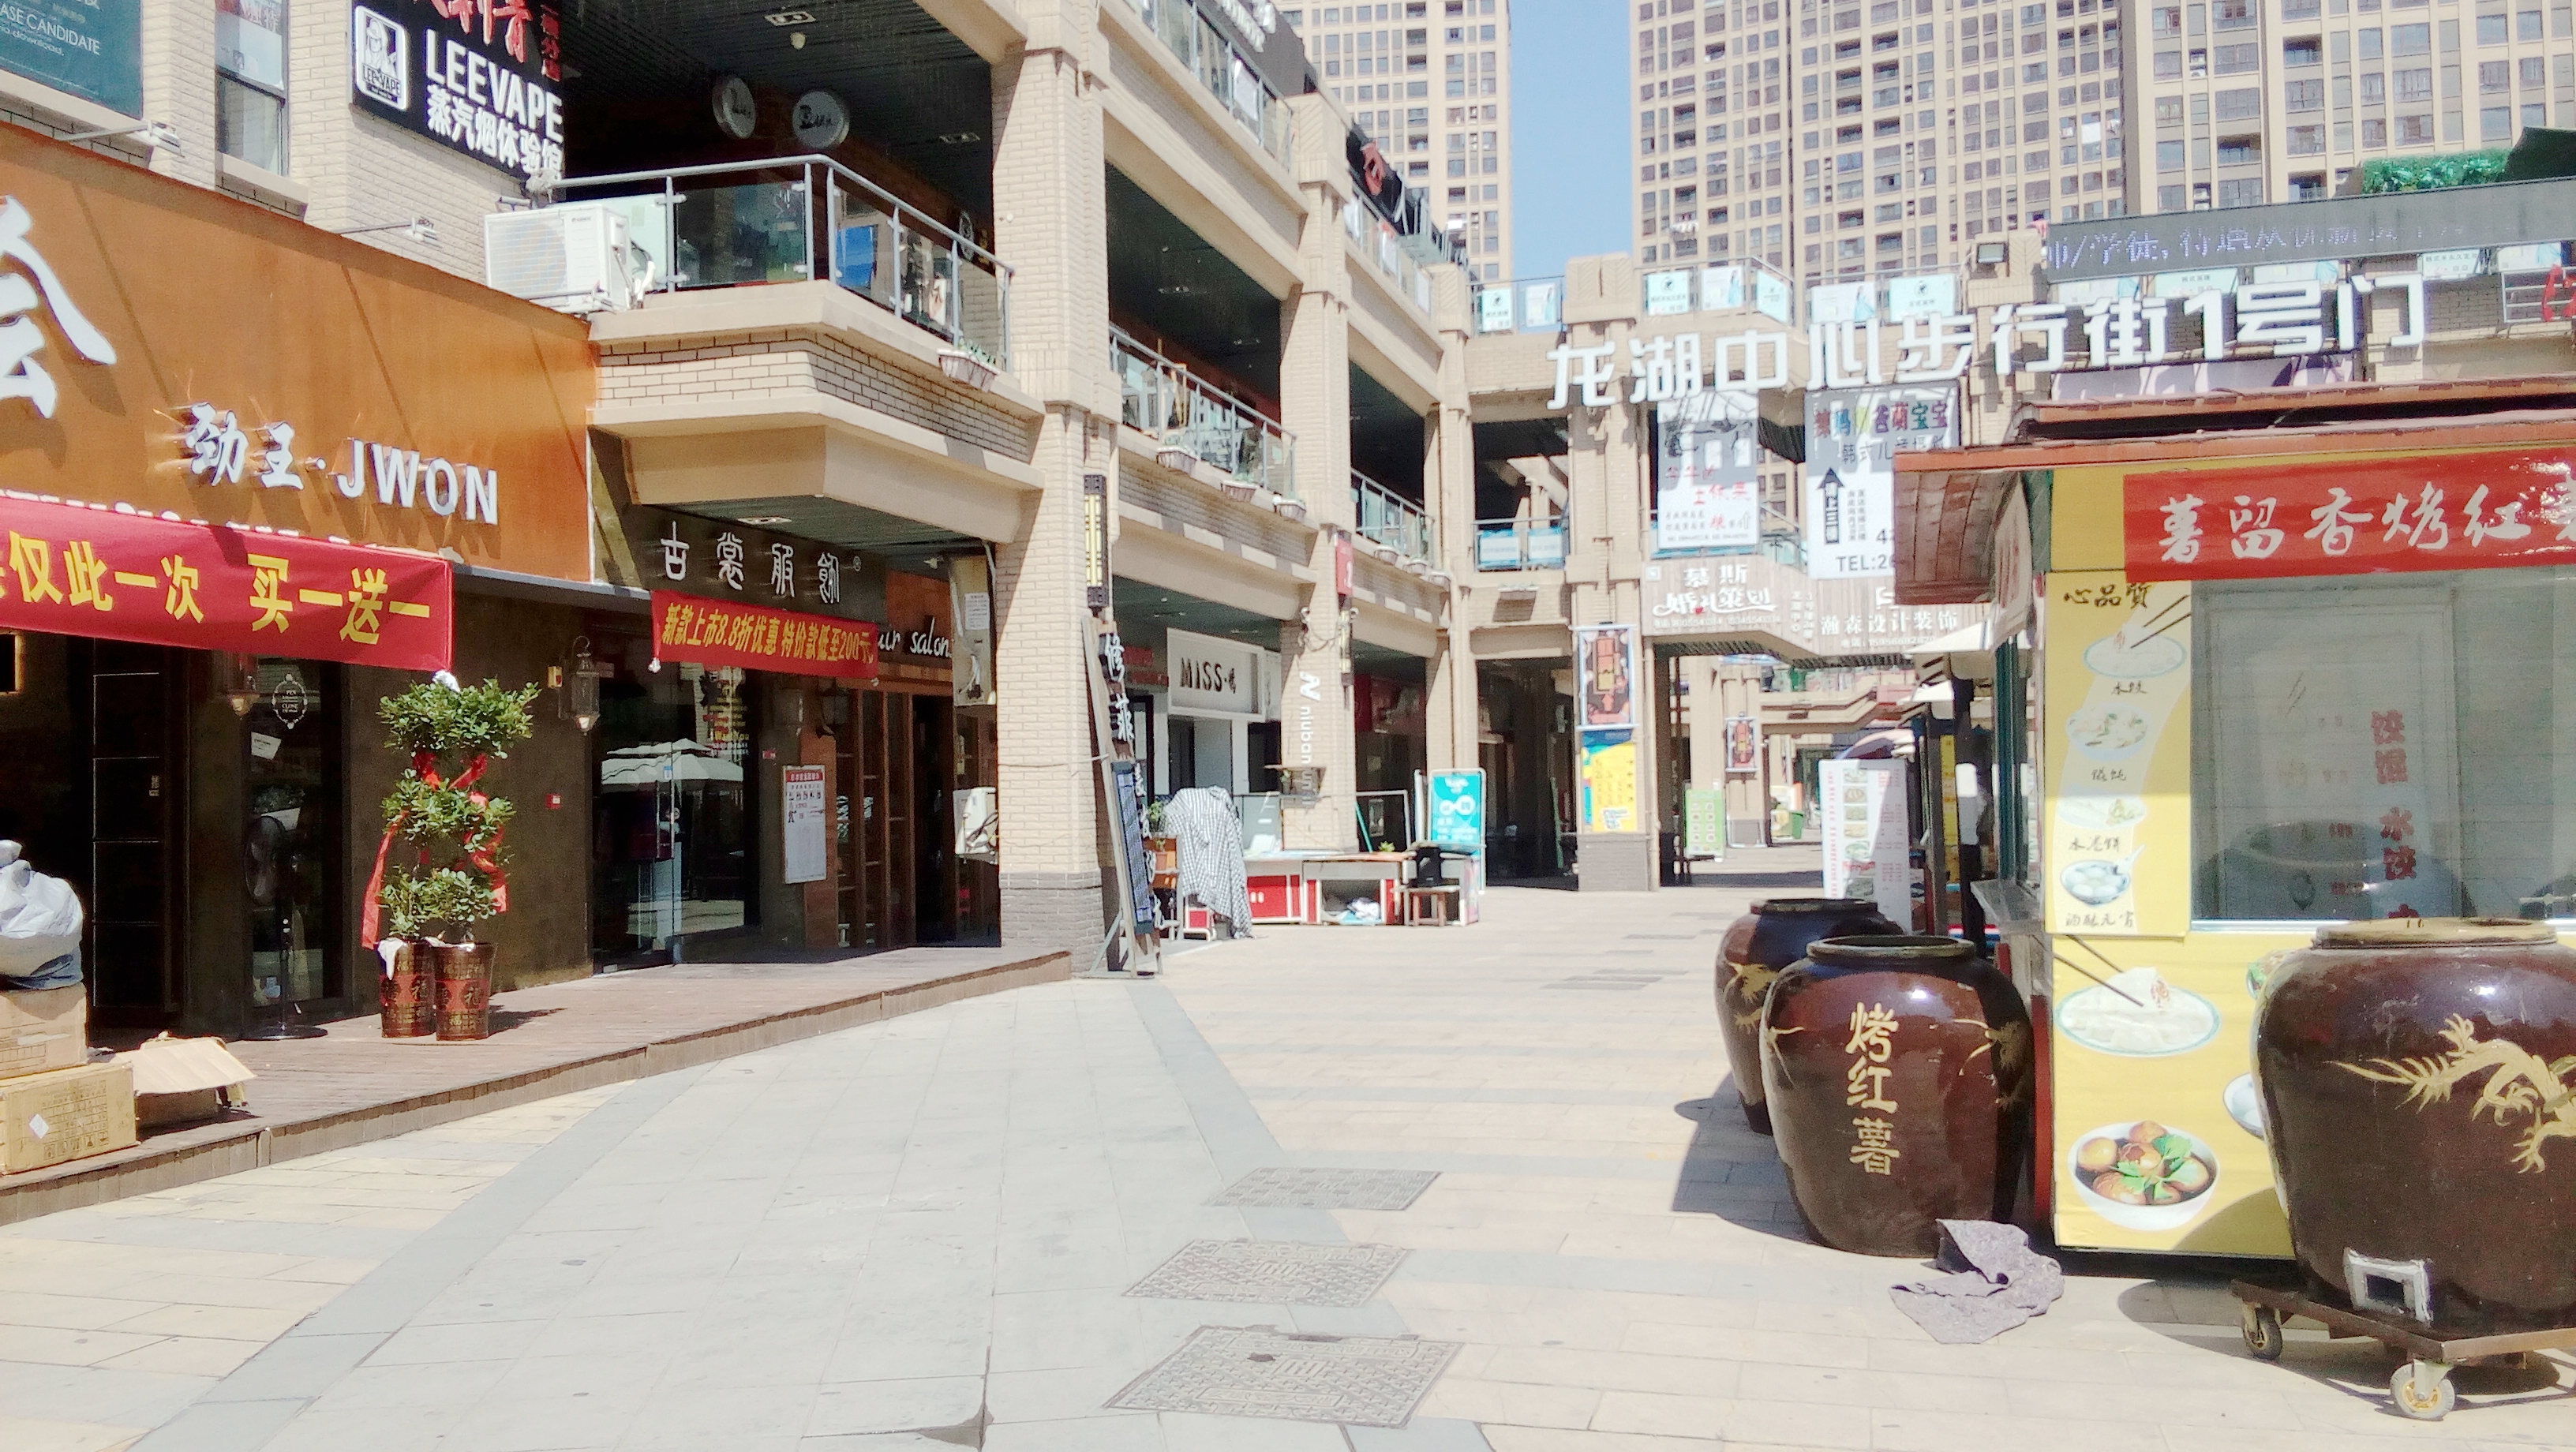 龙湖市场商业步行街图片